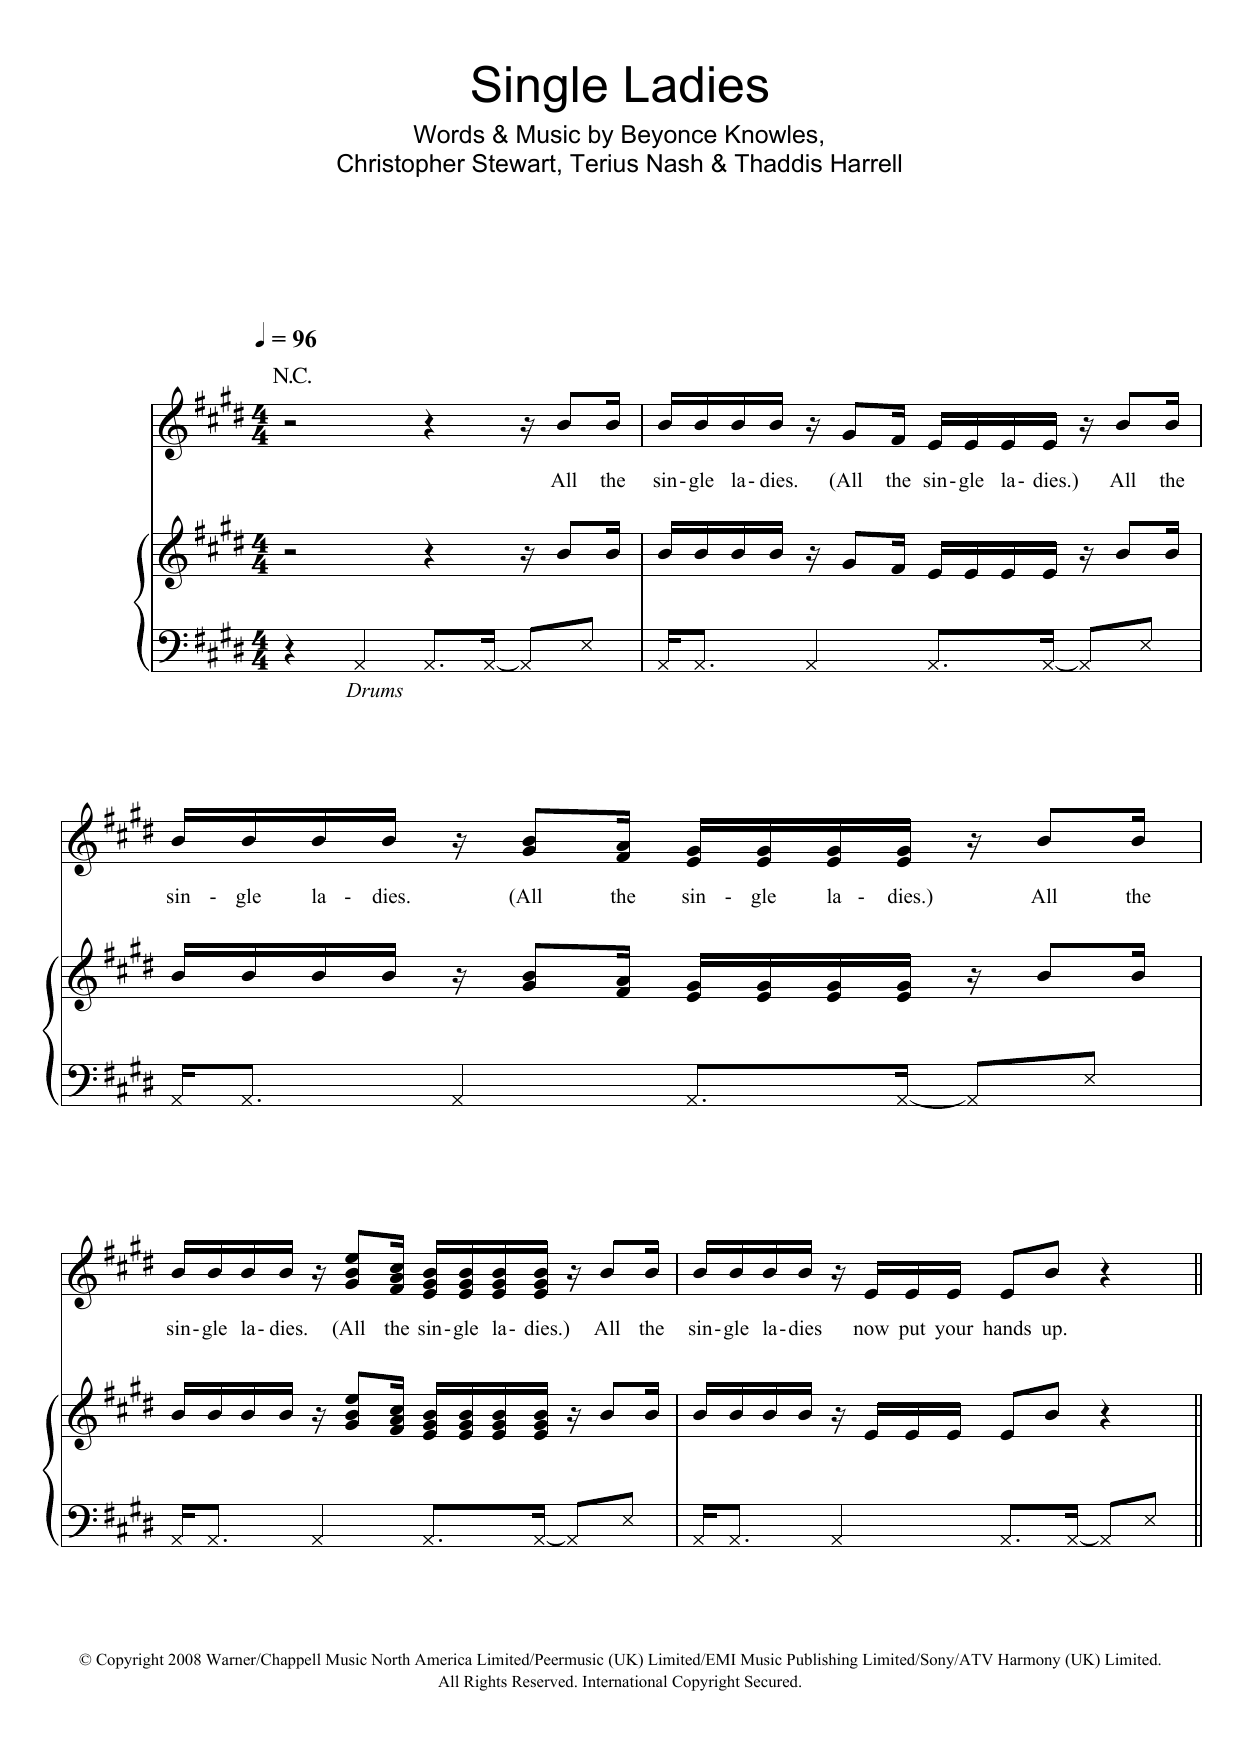 Beyonce Single Ladies Sheet Music Notes & Chords for Guitar Chords/Lyrics - Download or Print PDF